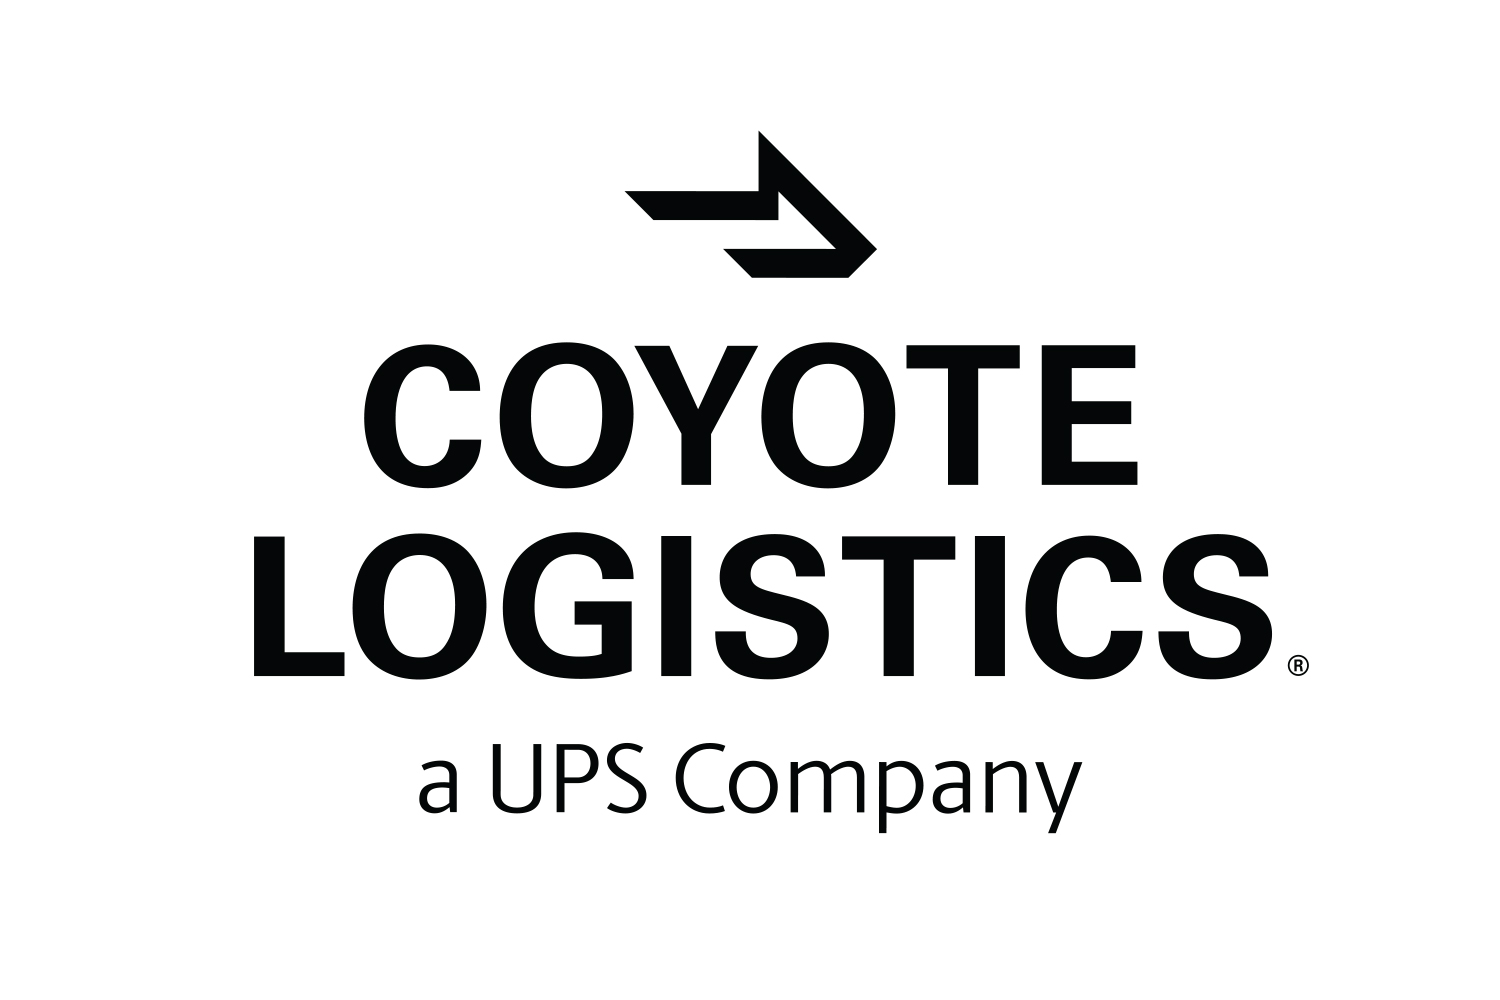 Coyote Logistics UPS Company - Global Logo